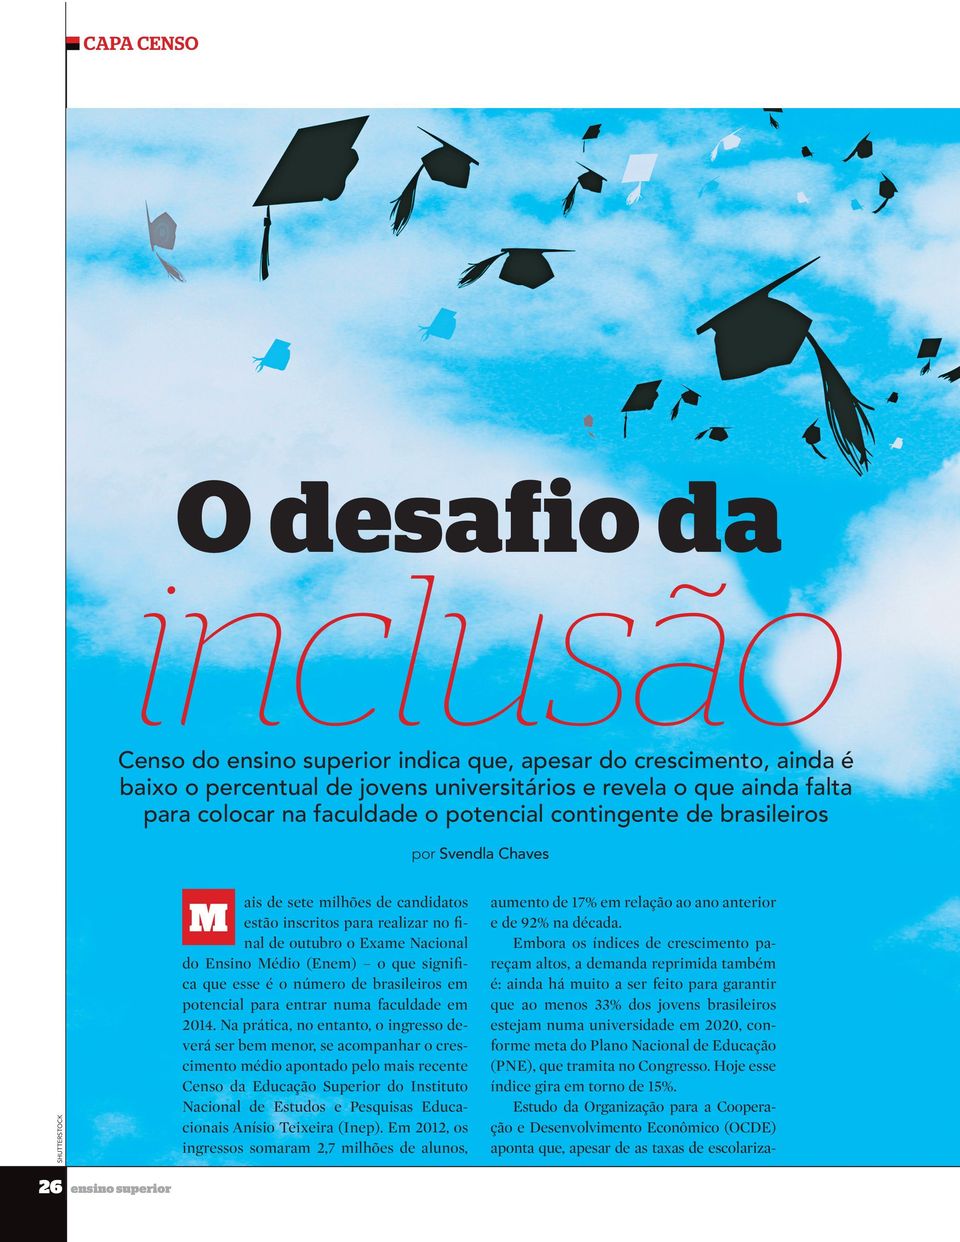 significa que esse é o número de brasileiros em potencial para entrar numa faculdade em 2014.